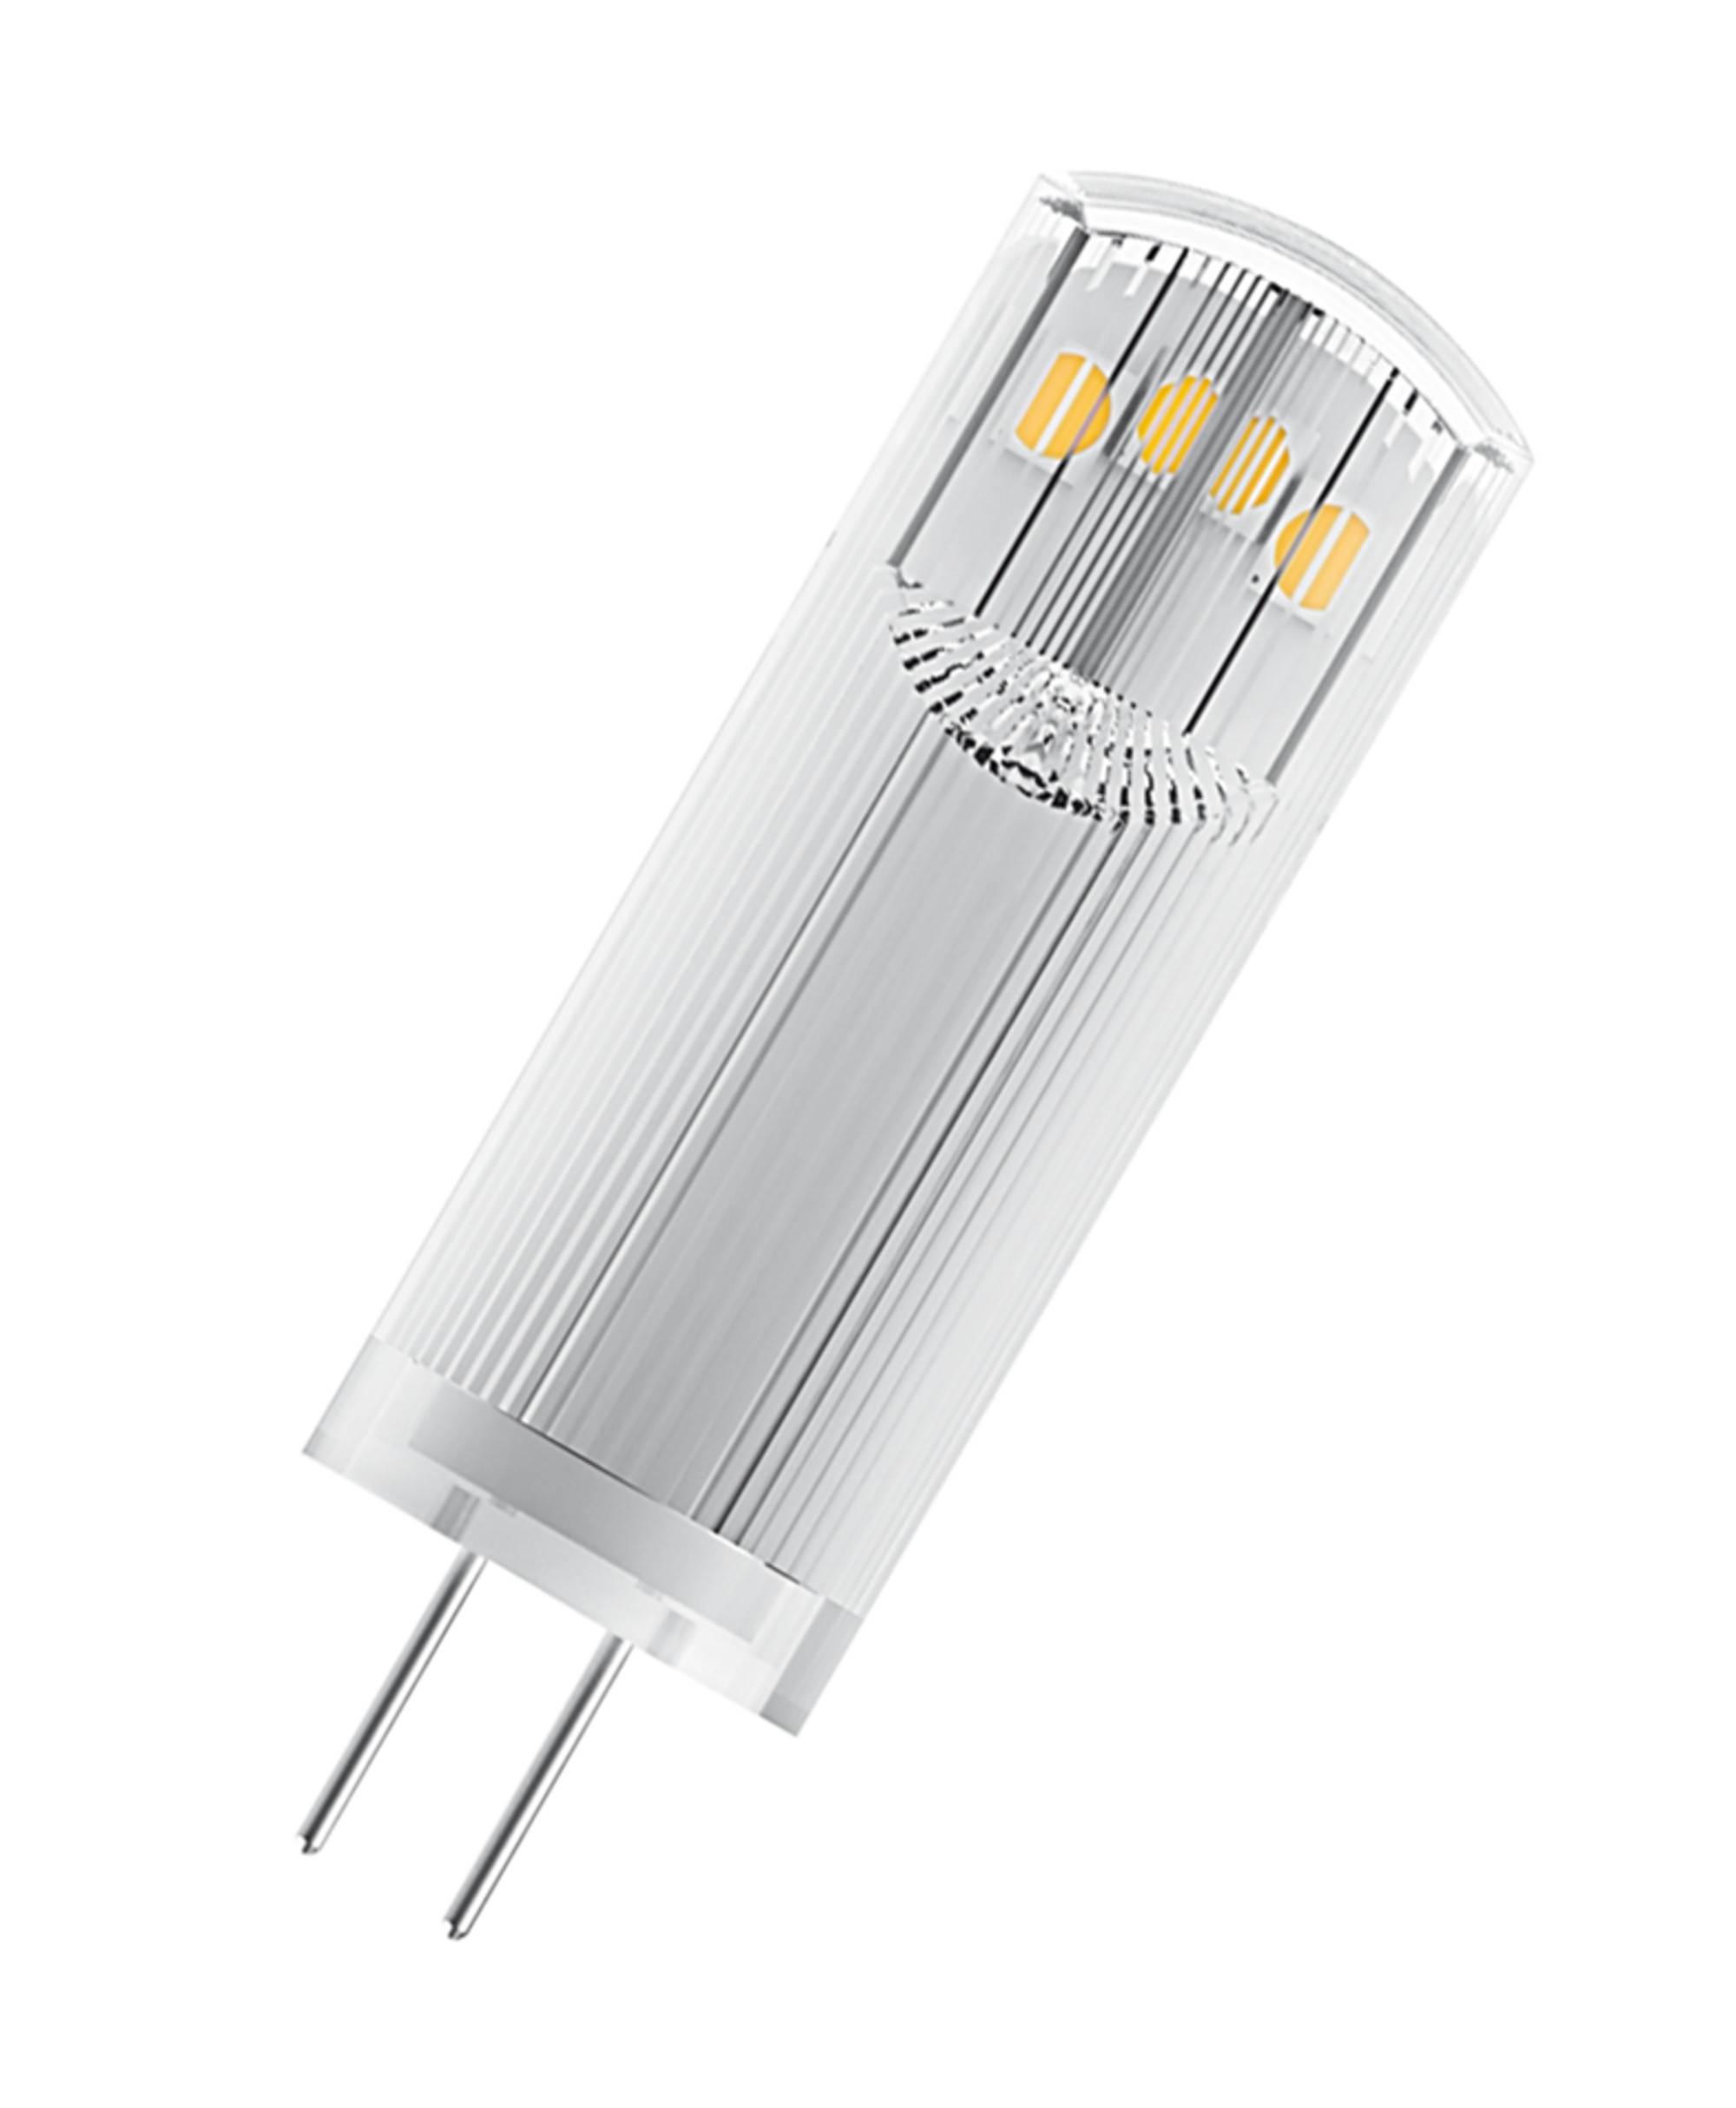 OSRAM  LED BASE PIN G4 Lampe LED Lumen Warmweiß 12 200 V